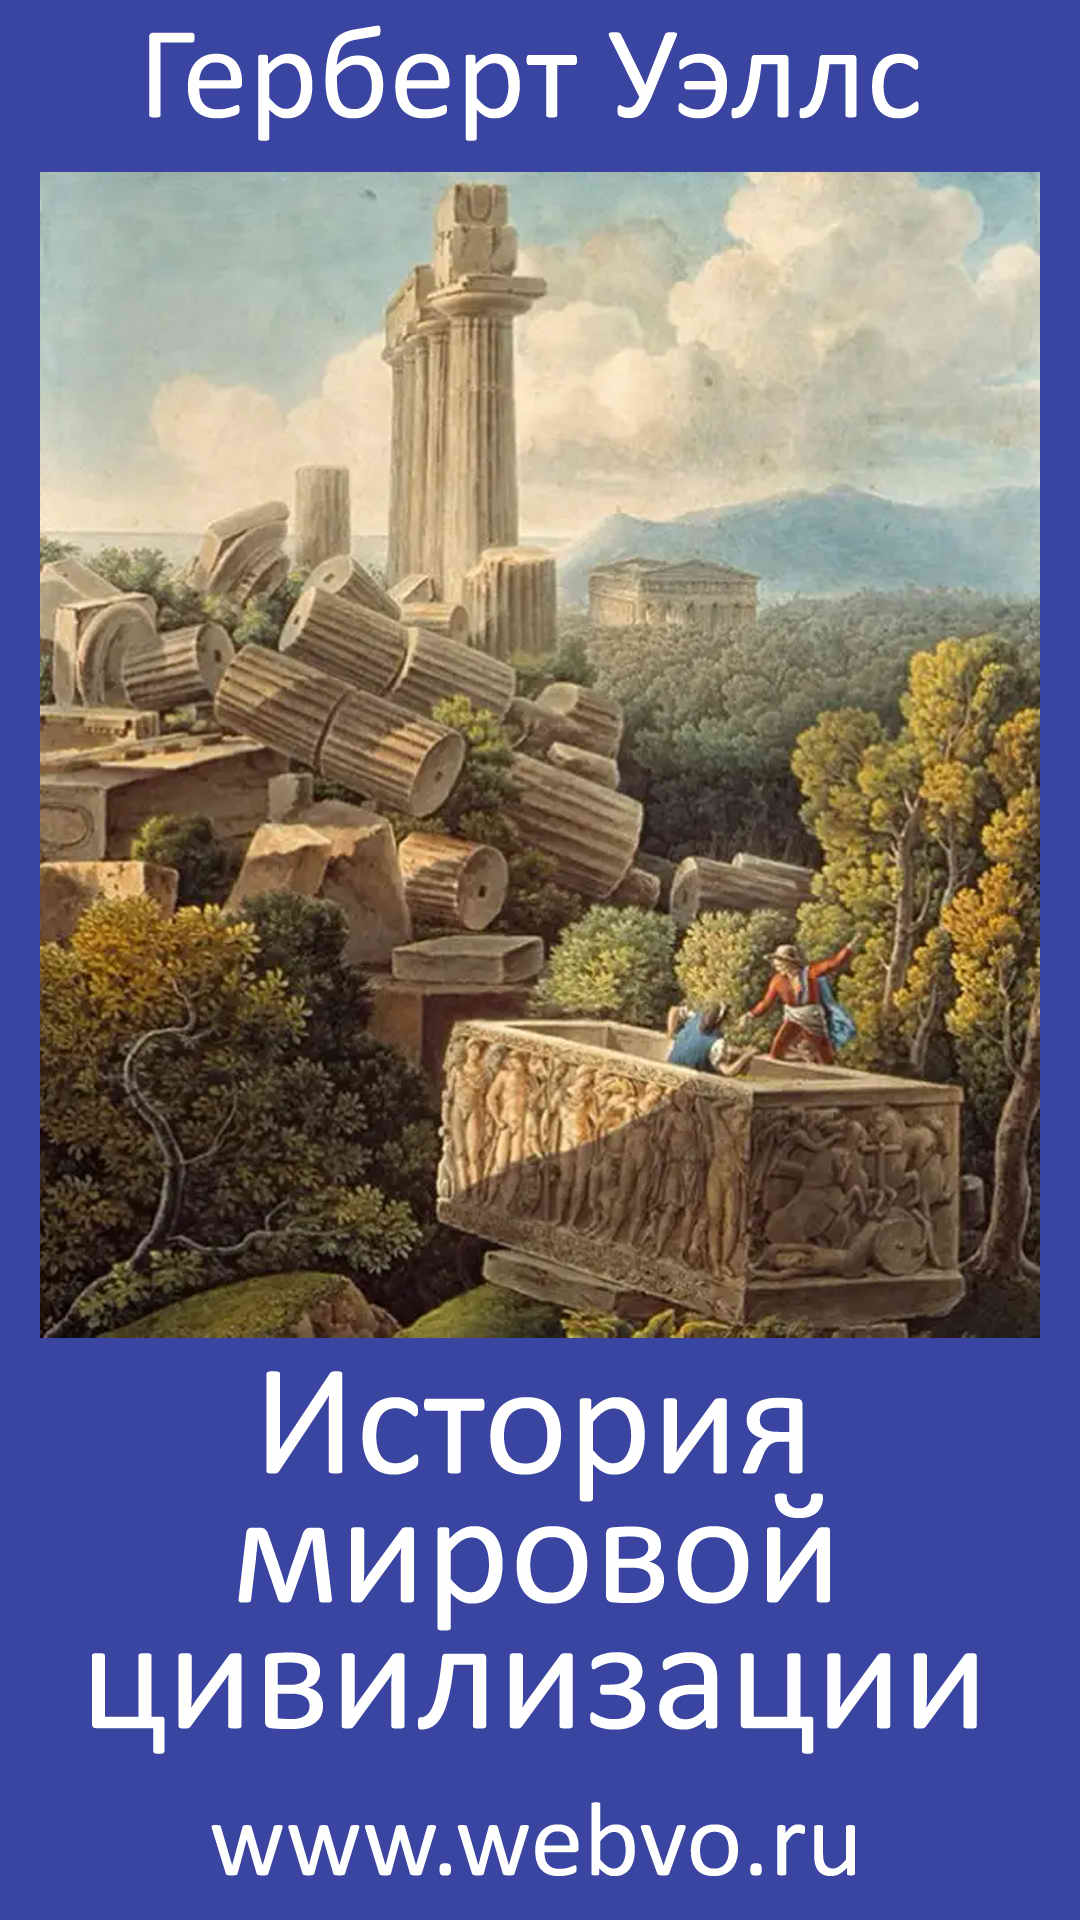 Герберт Уэллс, История мировой цивилизации, обложка бесплатной электронной книги